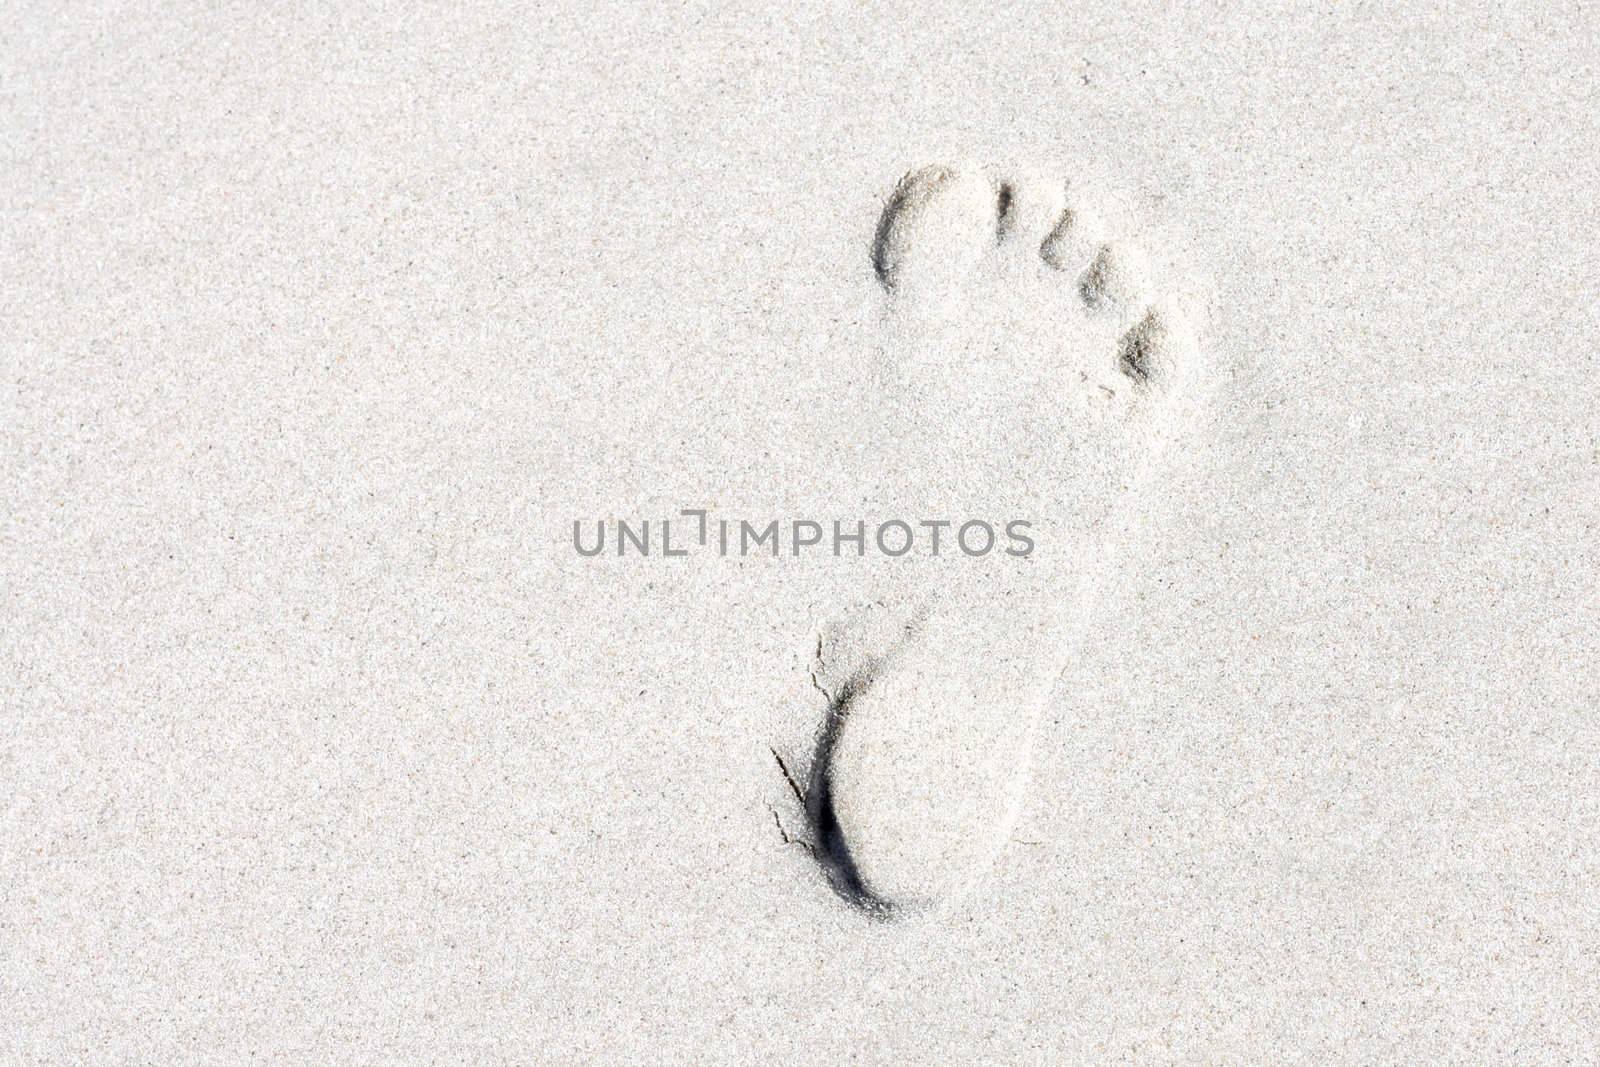 Footprint by leeser